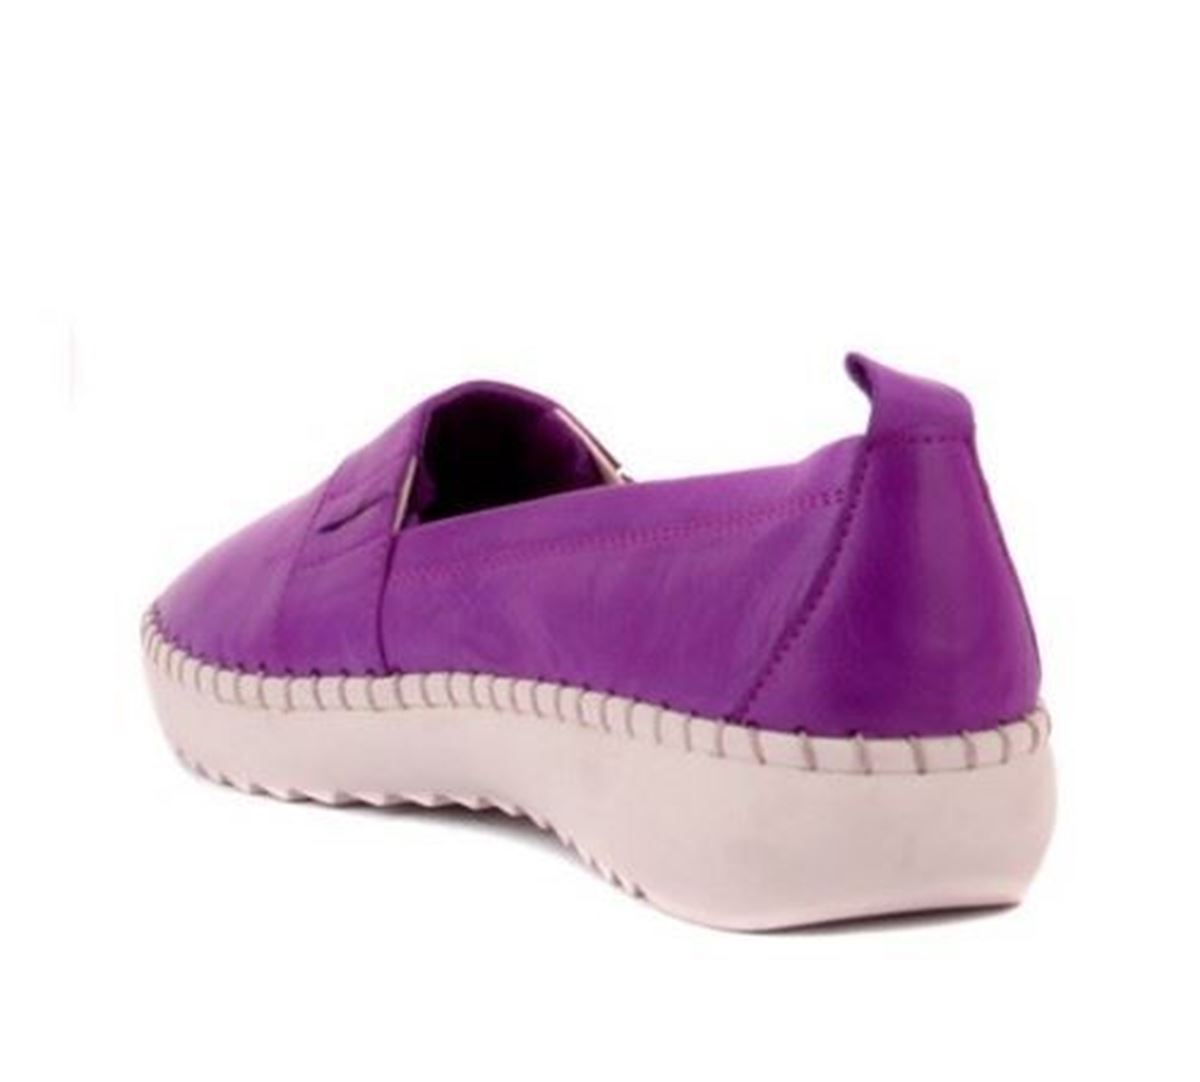 Sail Lakers - Mor Deri Kadın Günlük Ayakkabı resmi